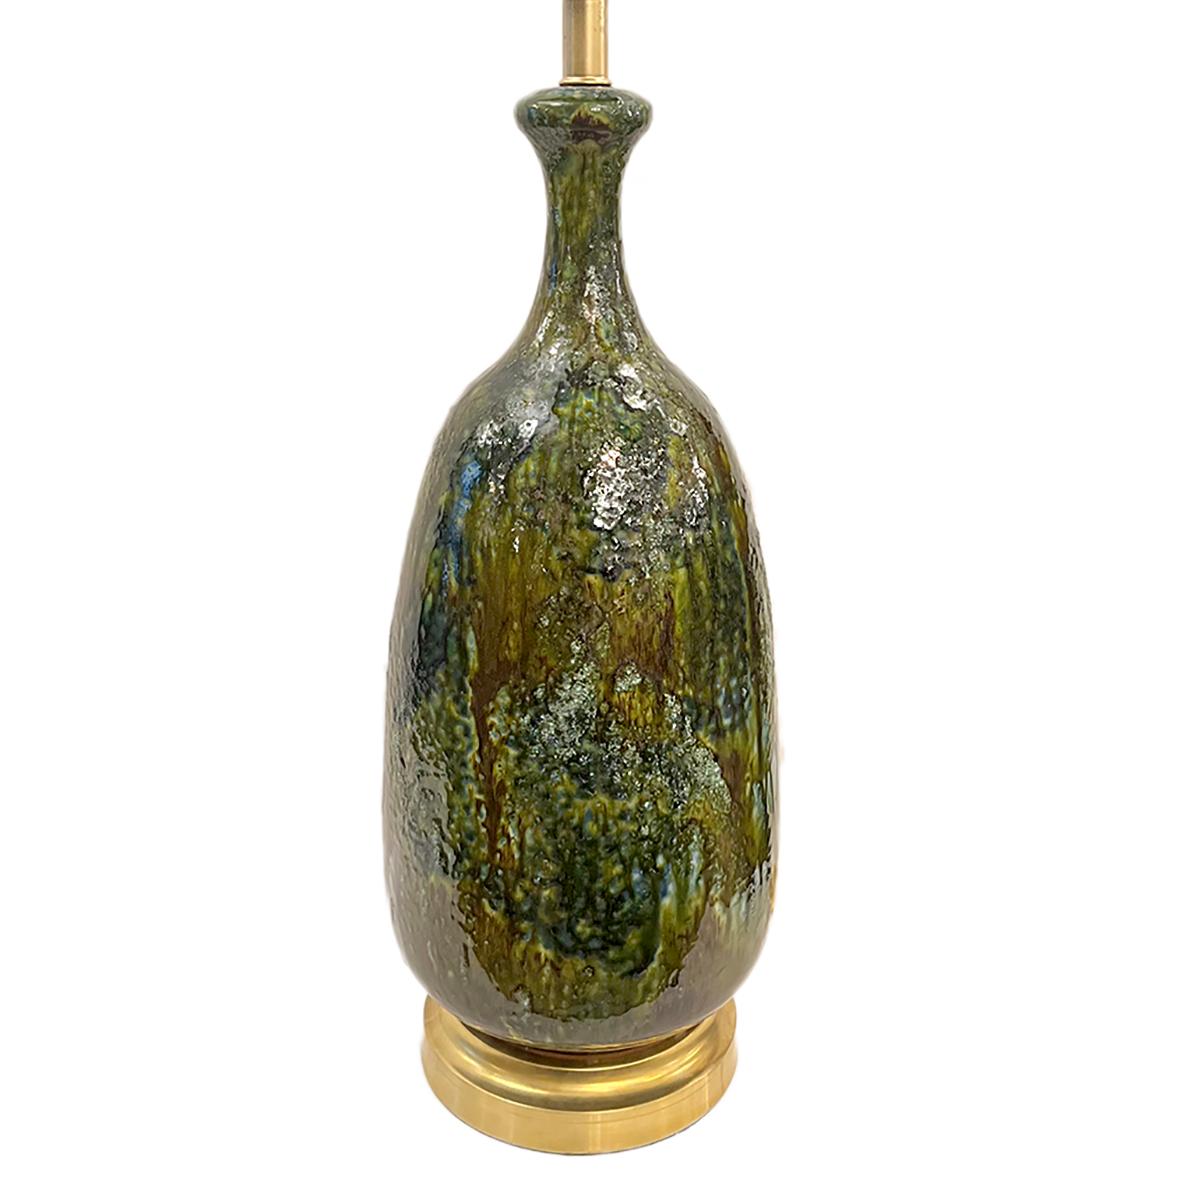 Lampe de table italienne en céramique avec base dorée, datant des années 1960.

Mesures :
Hauteur du corps : 23.25